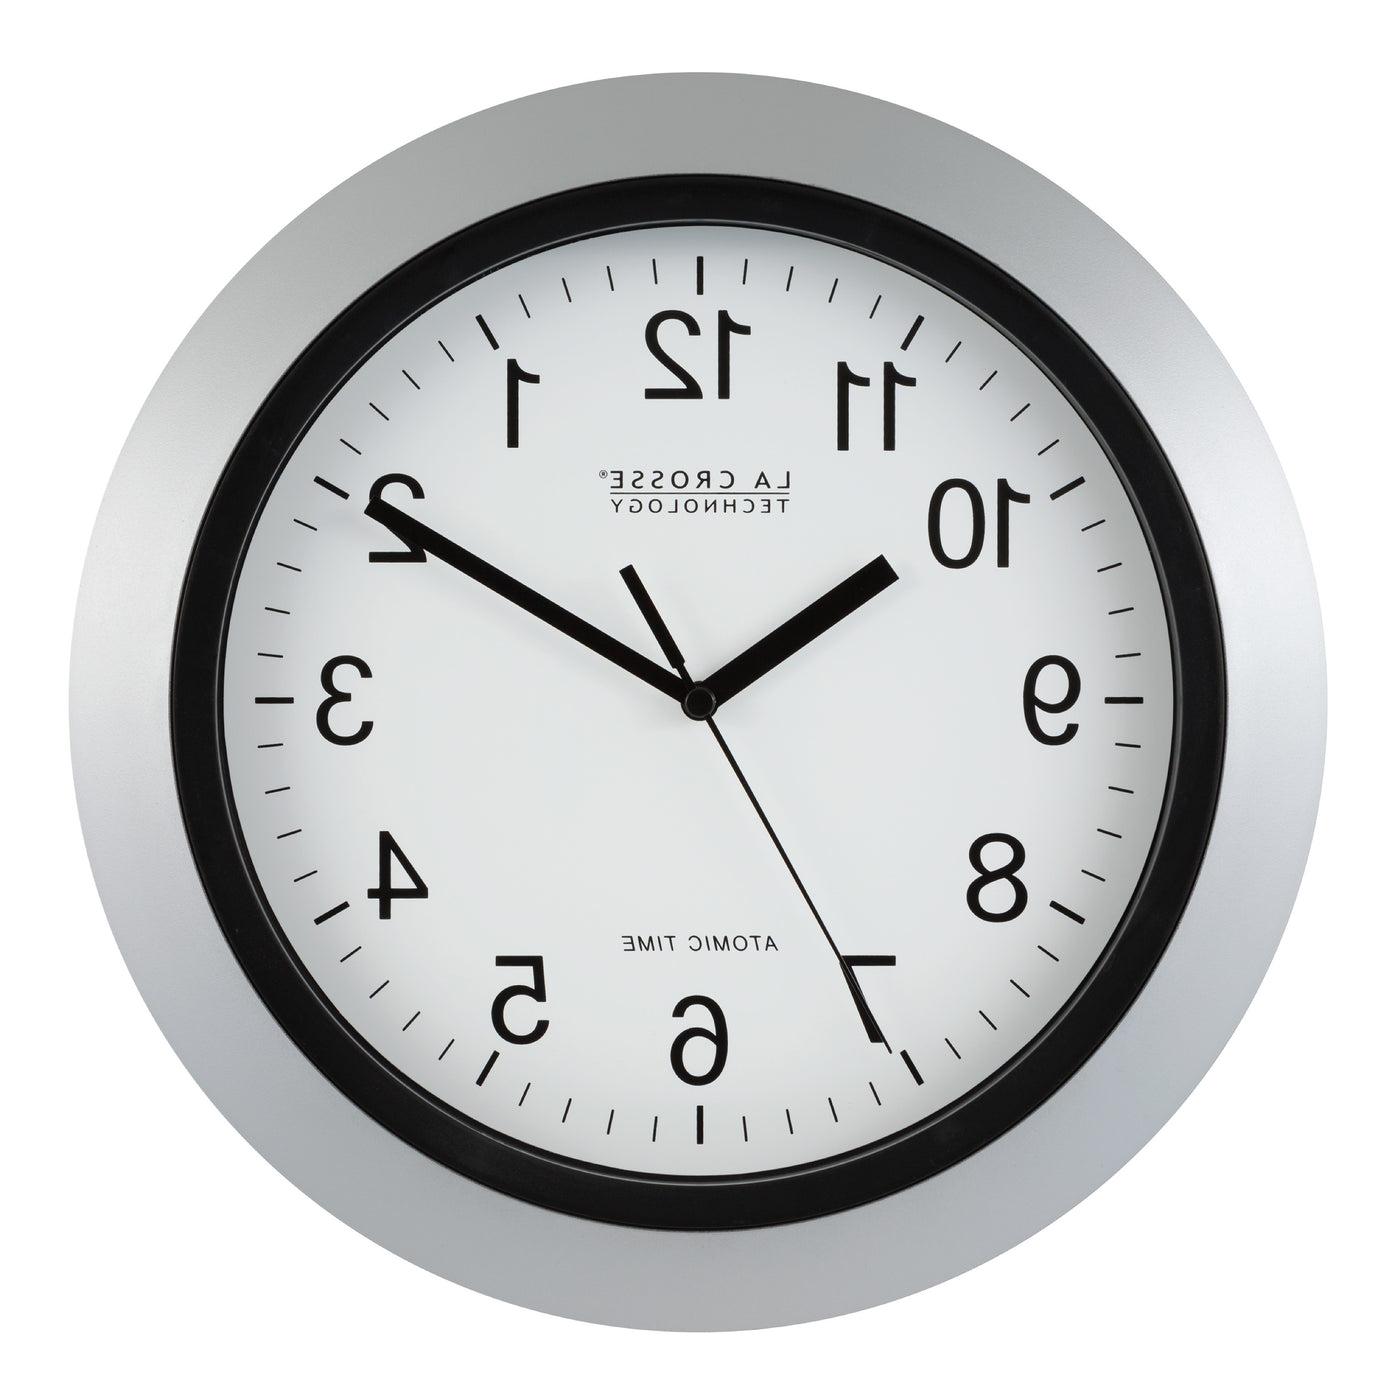 WT-3129SX1 12" Atomic Wall Clock